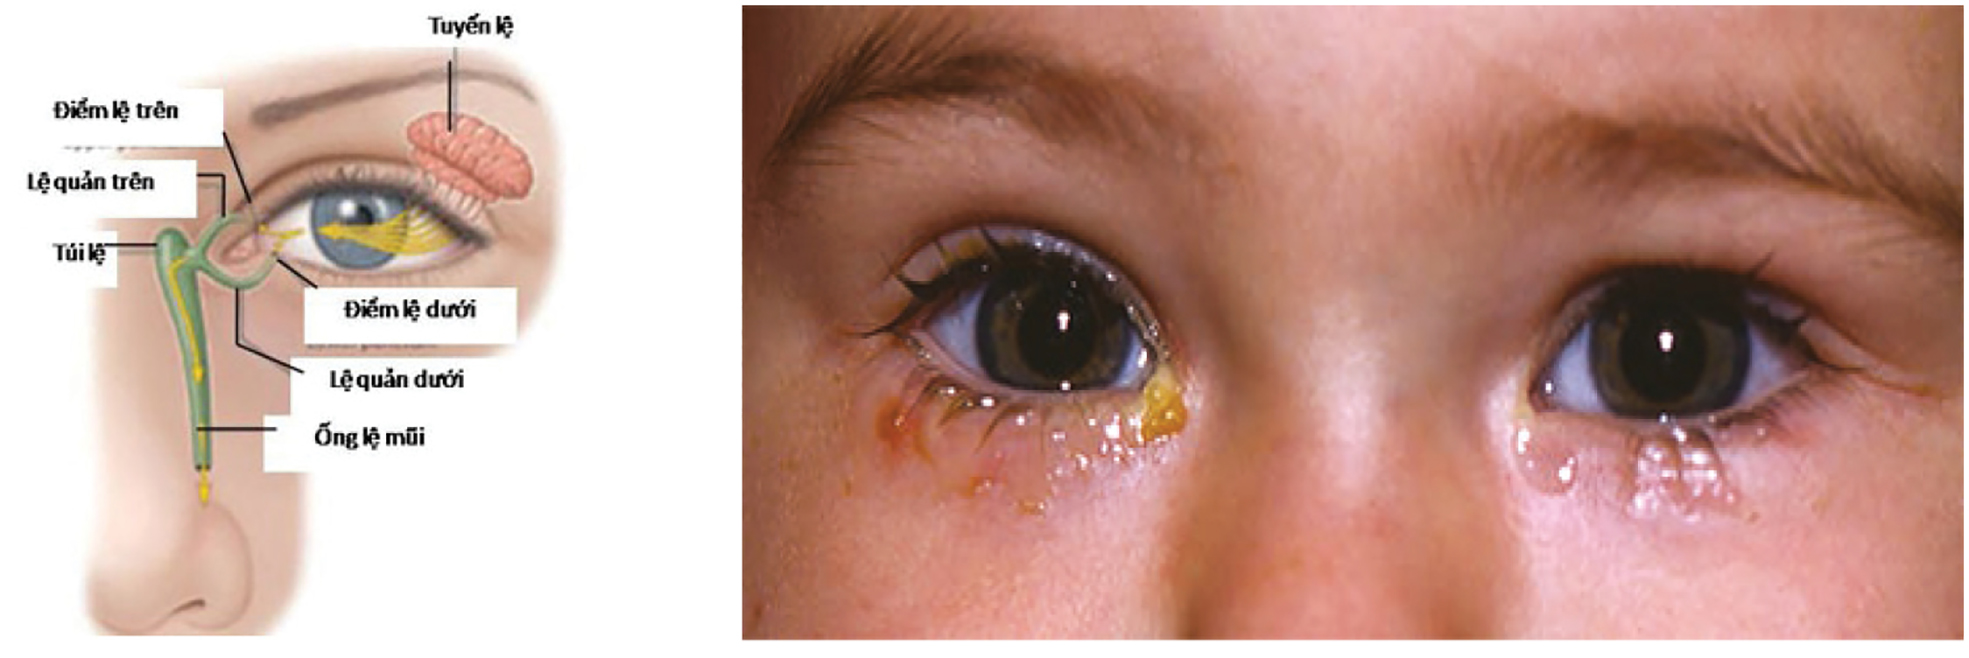 Hình ảnh ống dẫn lệ (bên trái). Tắc ống lệ mũi hai bên với hiện tượng chảy nước mắt và đóng vảy quanh mắt.